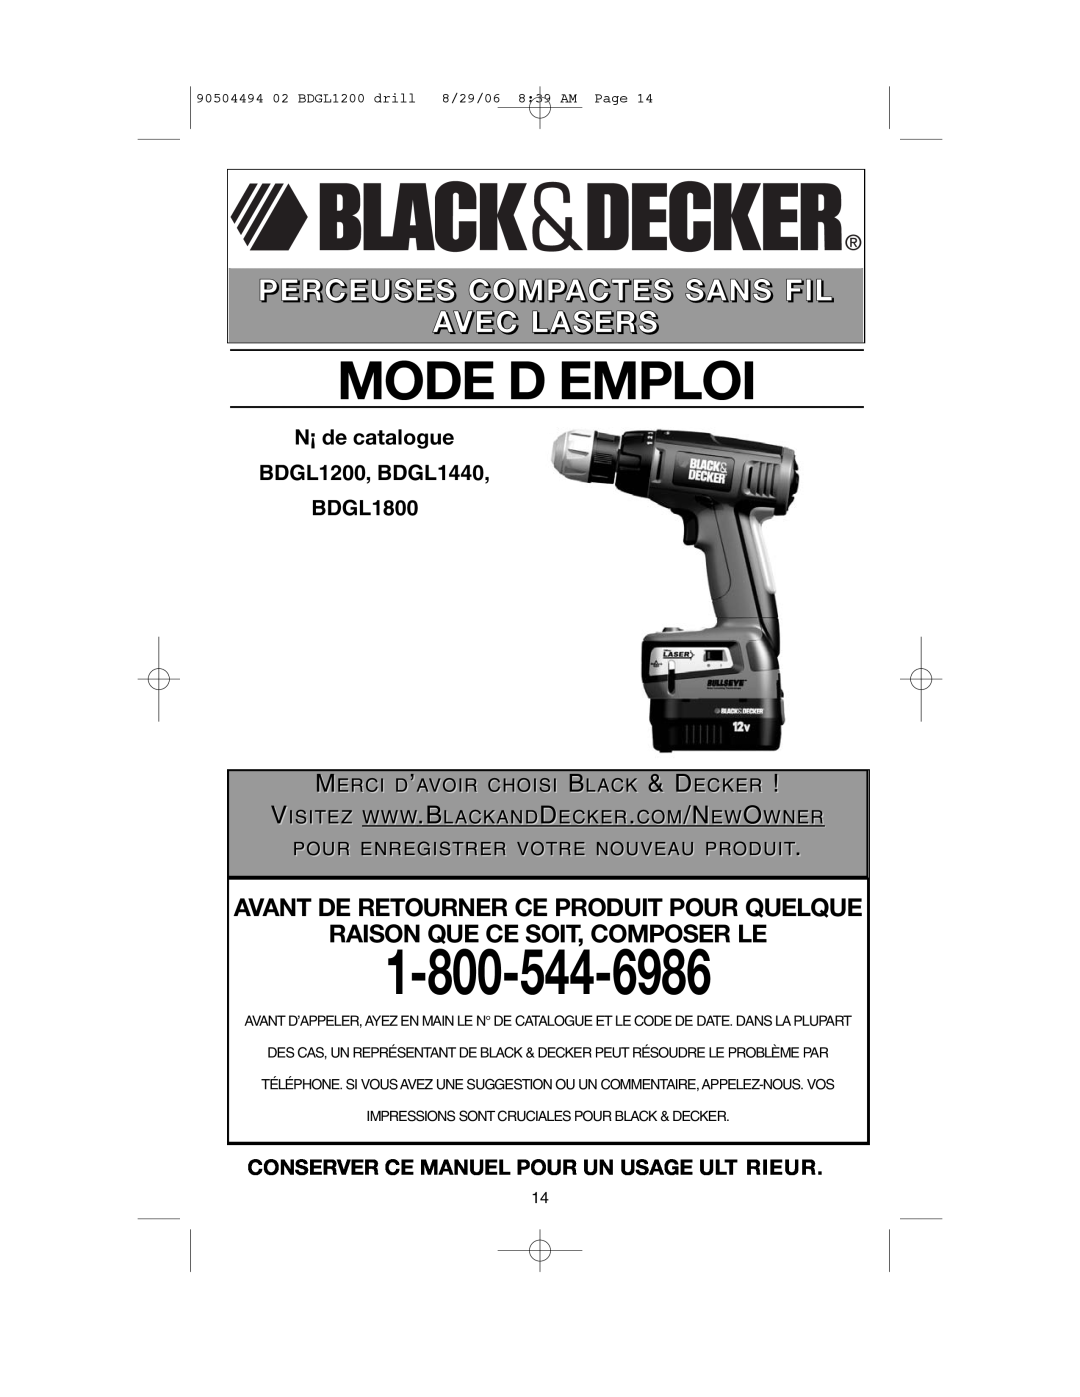 Black & Decker BDGL1200 Mode D Emploi, Avant De Retourner Ce Produit Pour Quelque, Raison Que Ce Soit, Composer Le 